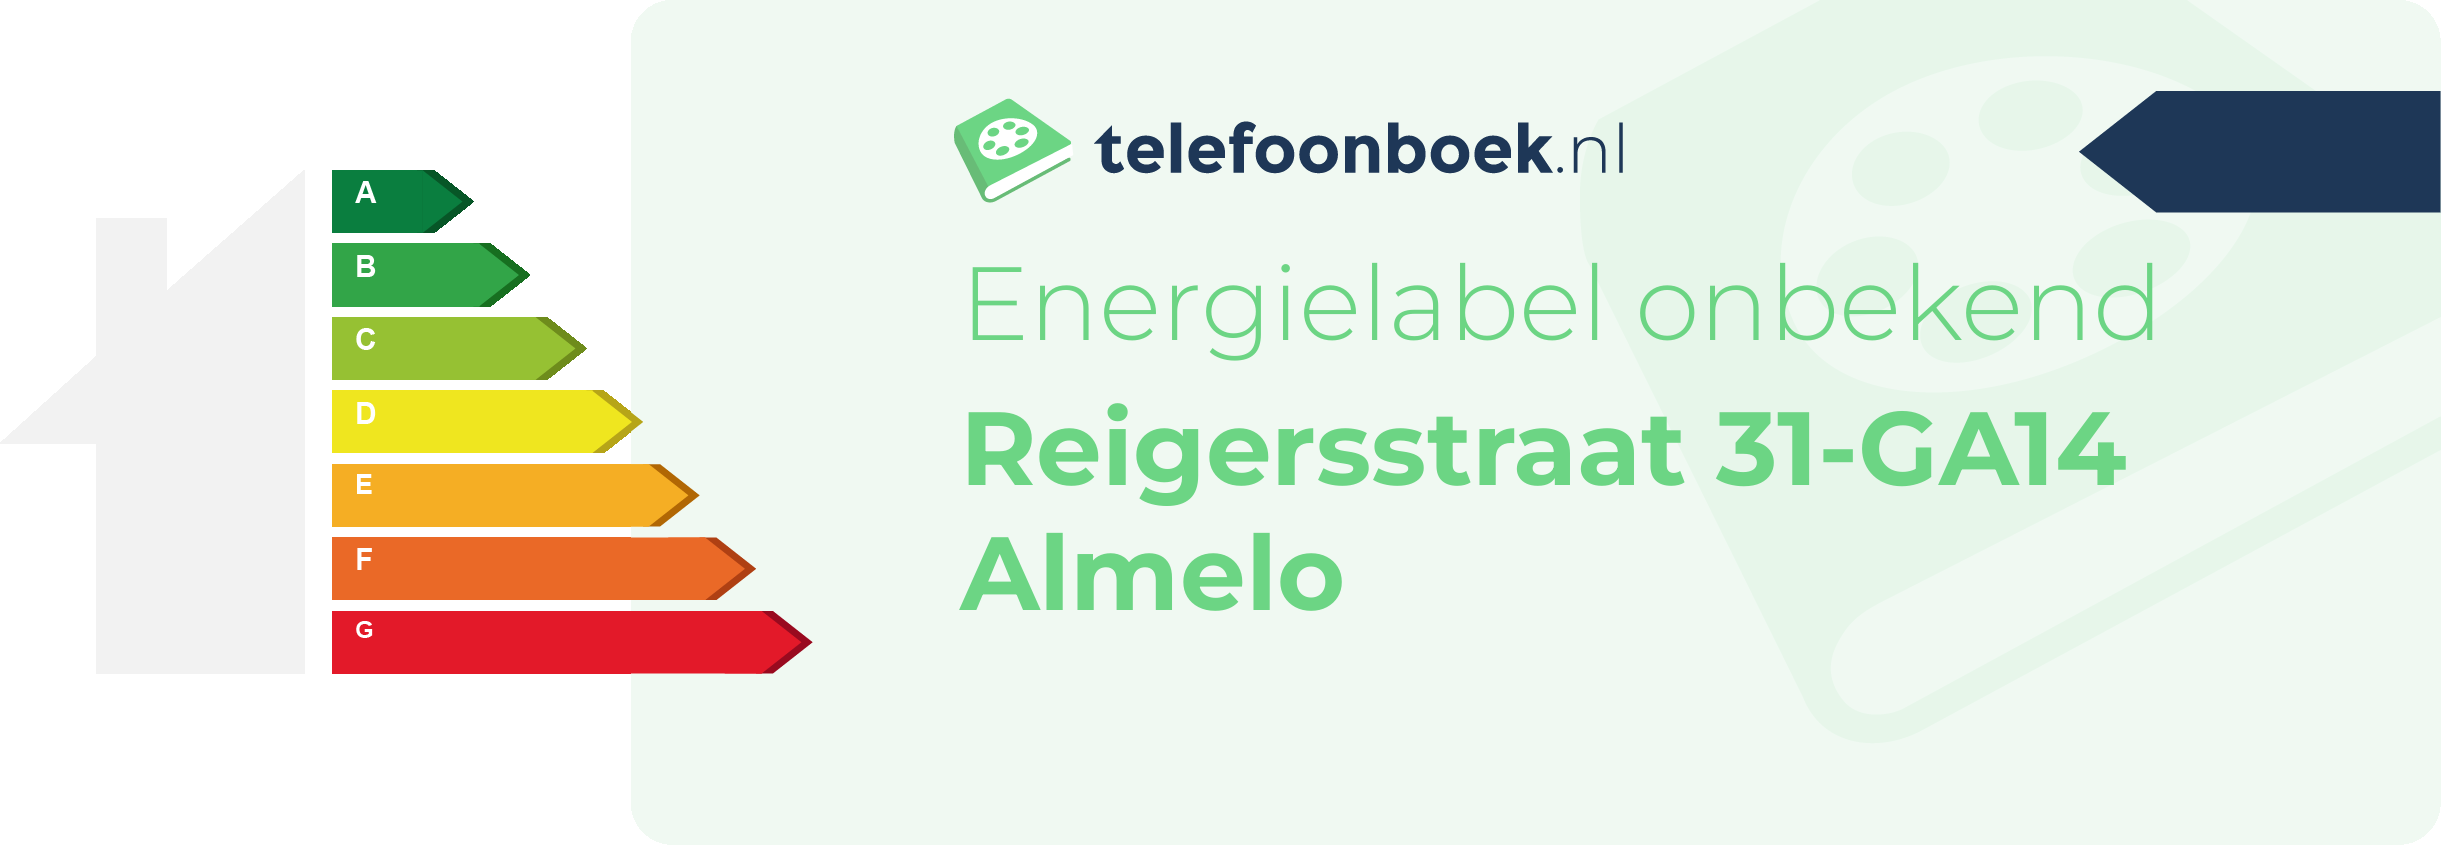 Energielabel Reigersstraat 31-GA14 Almelo